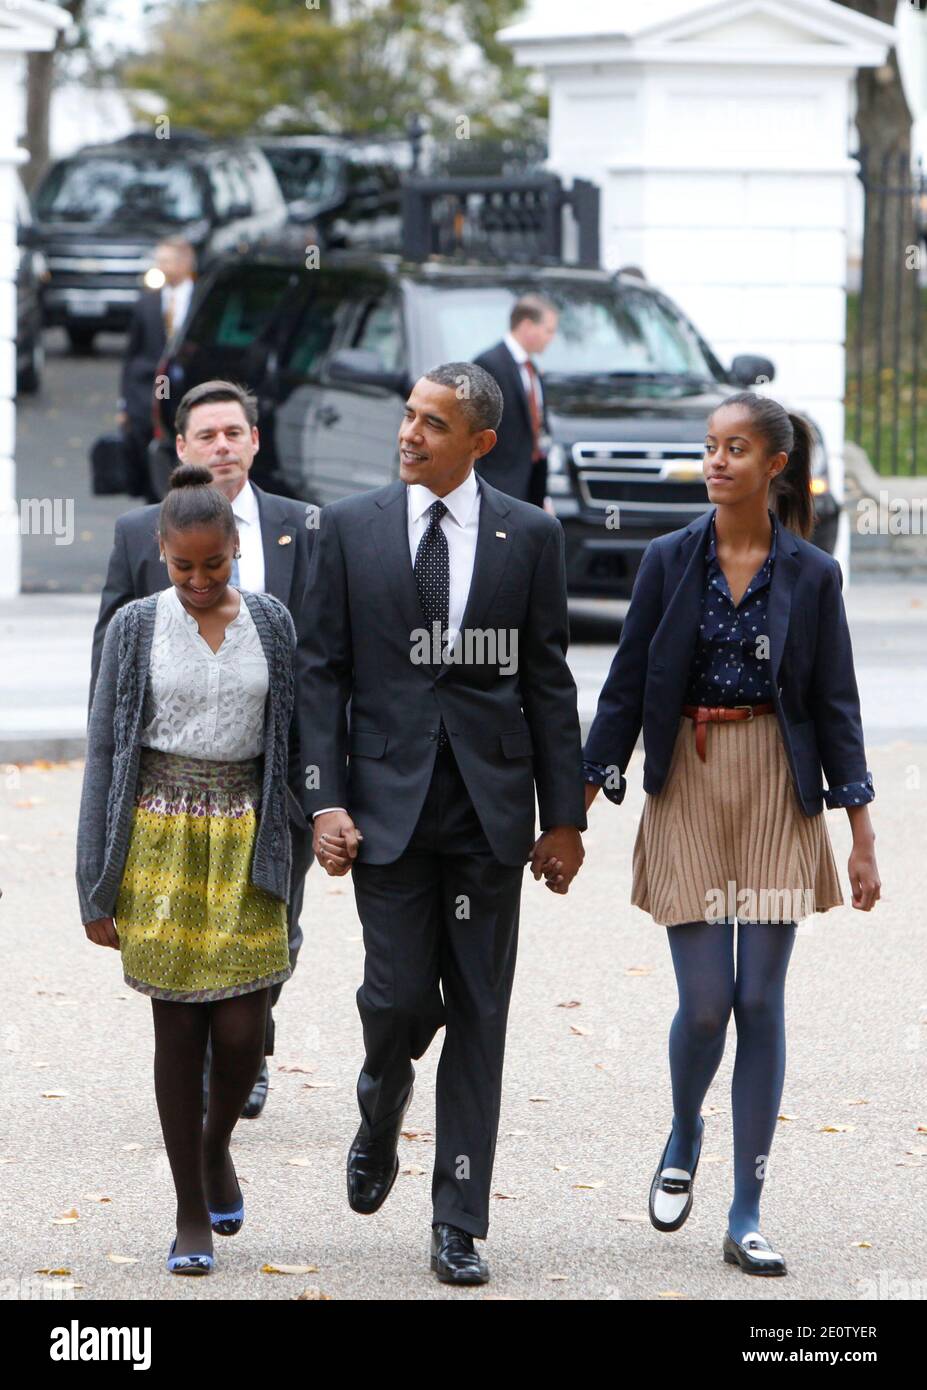 Il presidente Barack Obama e le figlie Sasha e Malia Obama camminano dalla Casa Bianca alla Chiesa episcopale di San Giovanni a Washington D.C, USA, il 28 ottobre 2012. Foto di Dennis Brack/piscina/ABACAPRESS.COM Foto Stock